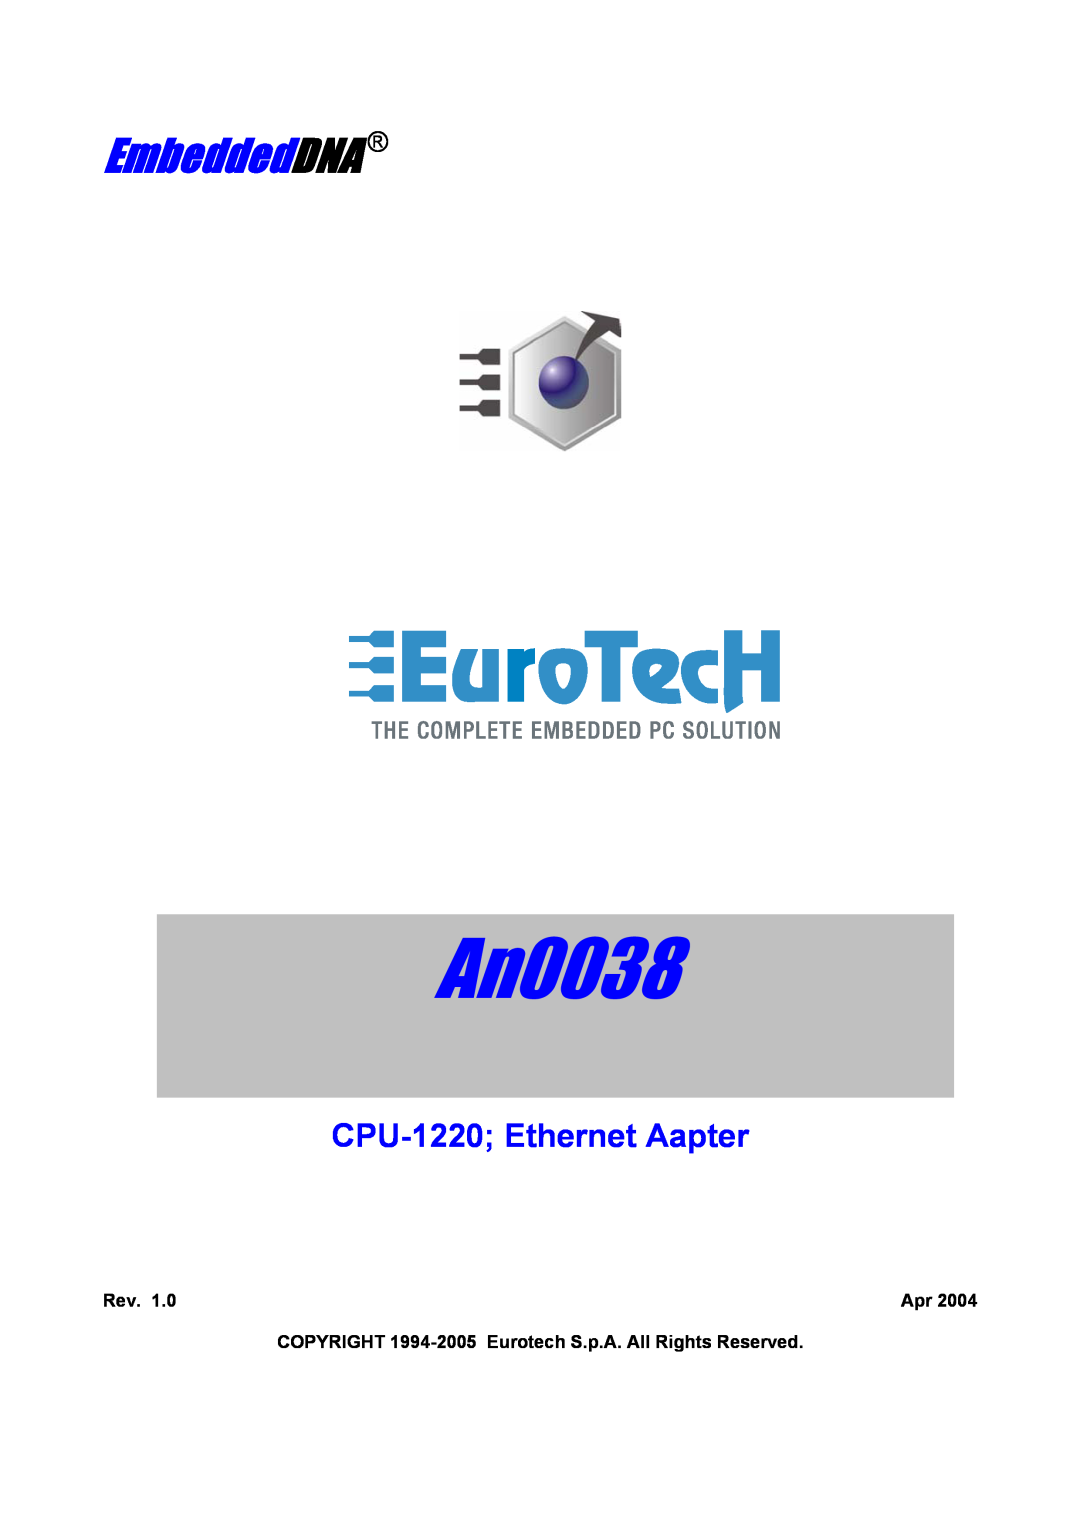 Eurotech Appliances An0038 manual EmbeddedDNA, CPU-1220 Ethernet Aapter 